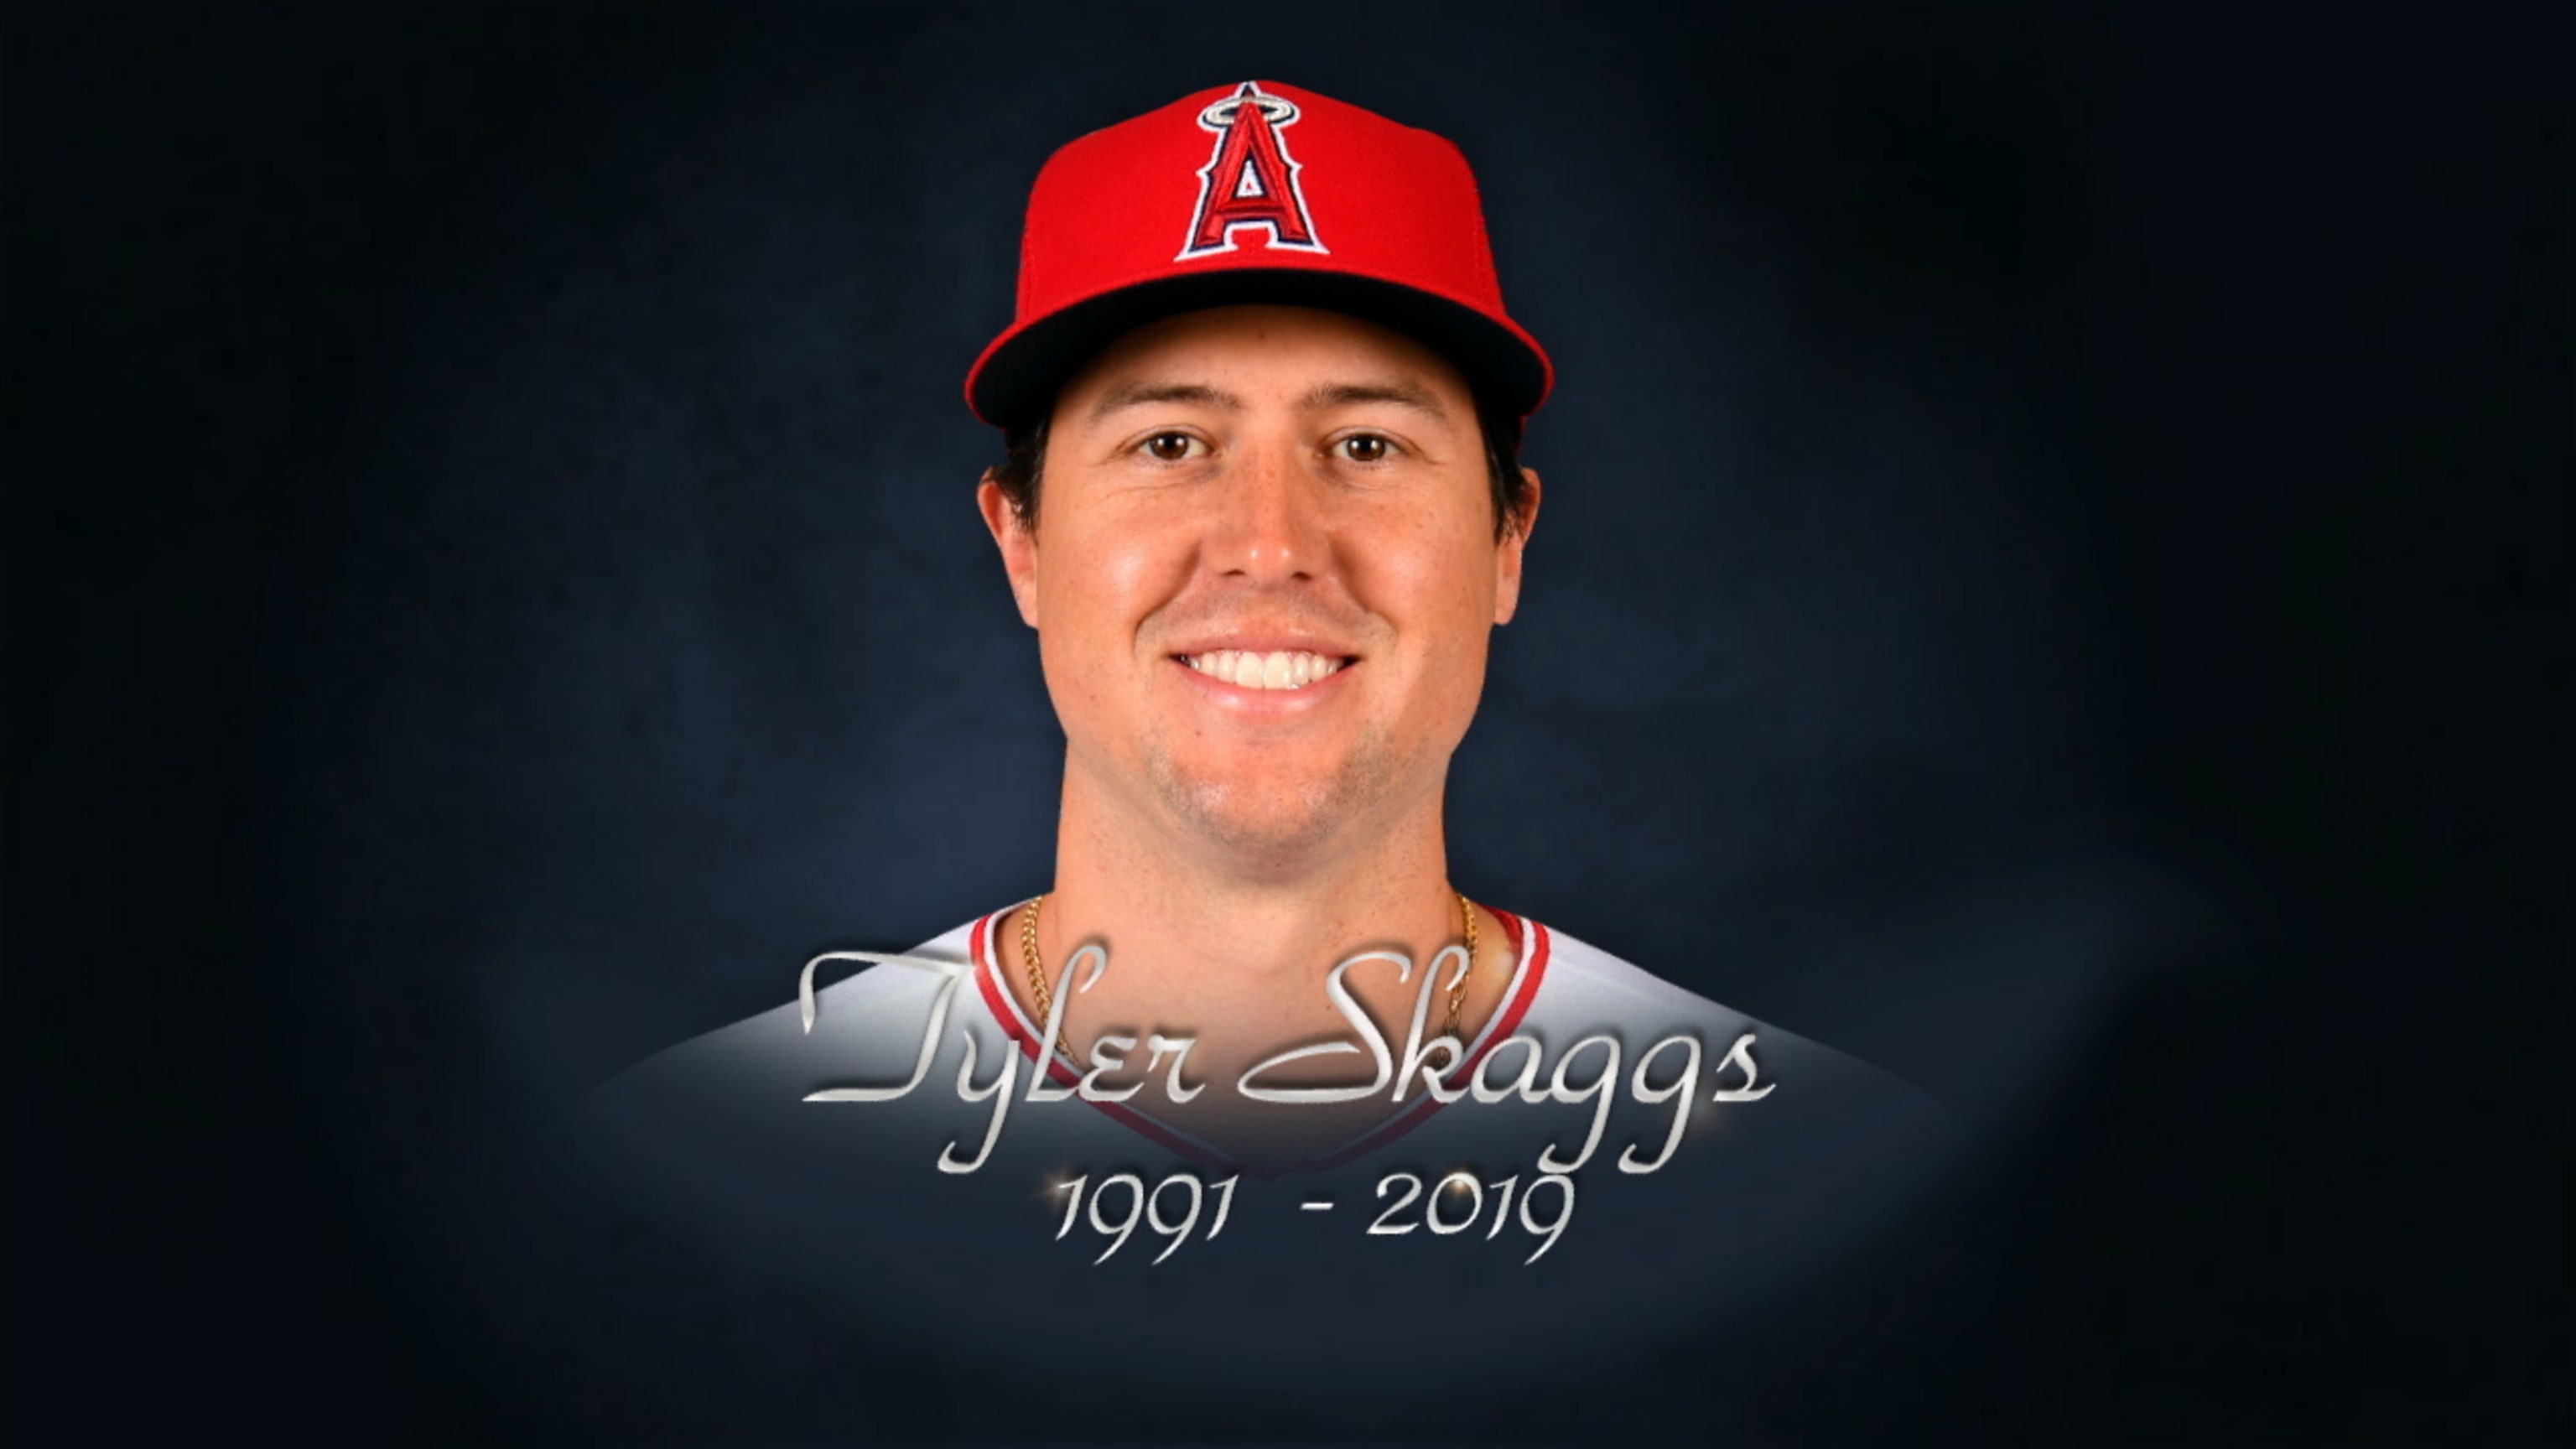 MLB honors Tyler Skaggs, 07/03/2019